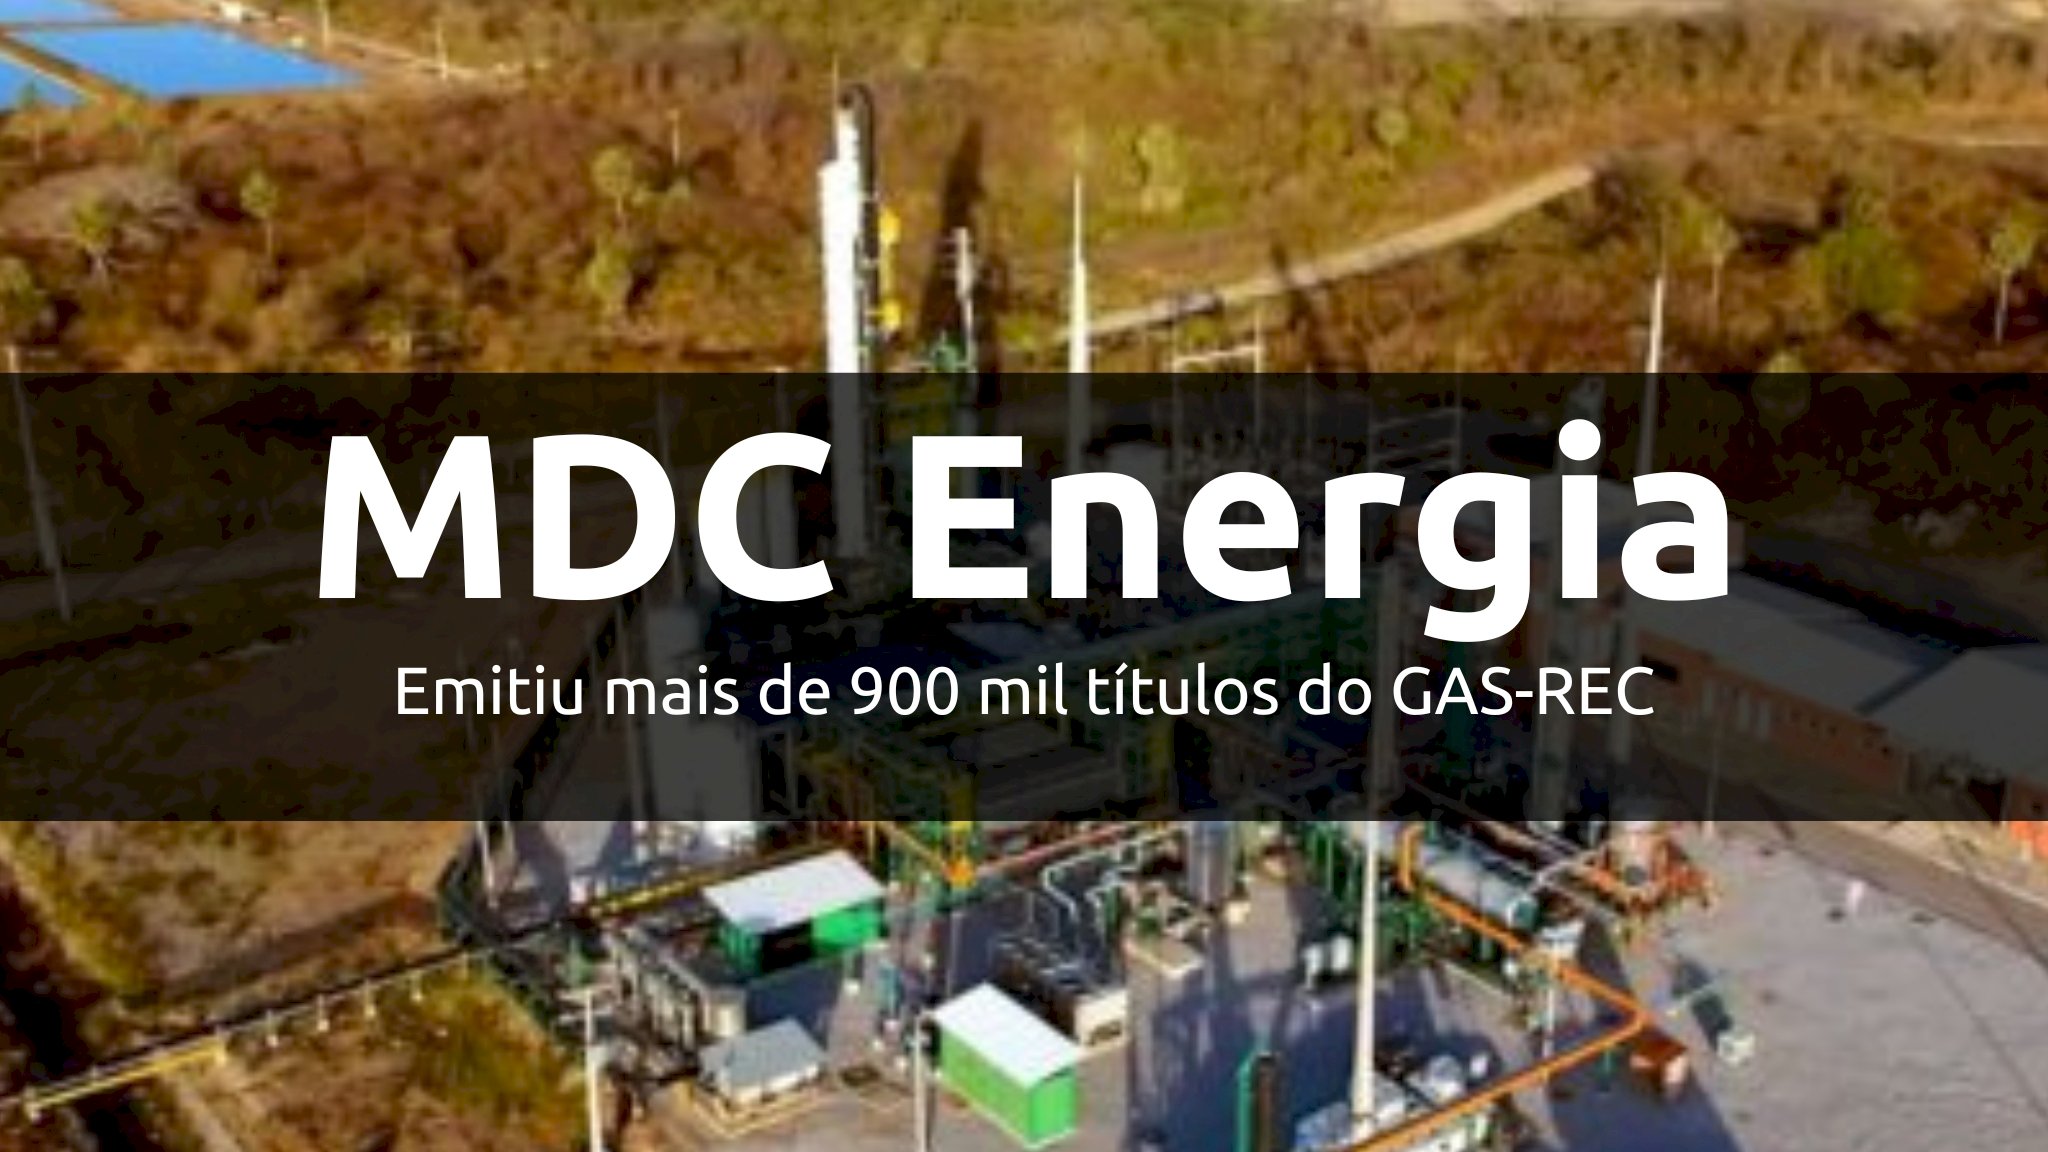 MDC Energia emitiu mais de 900 mil títulos do GAS-REC